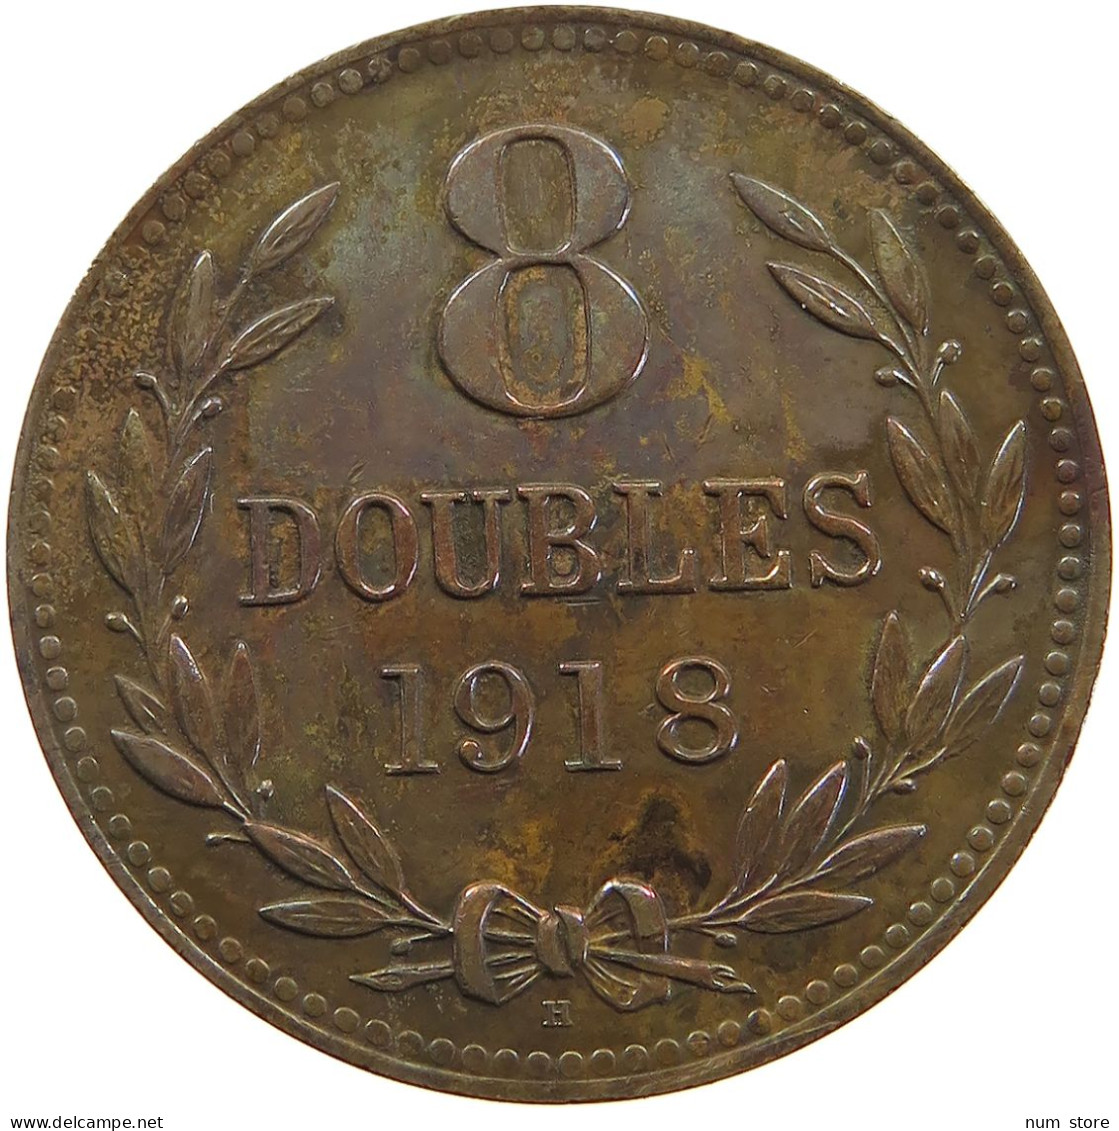 GUERNSEY 8 DOUBLES 1918  #a062 0207 - Guernsey